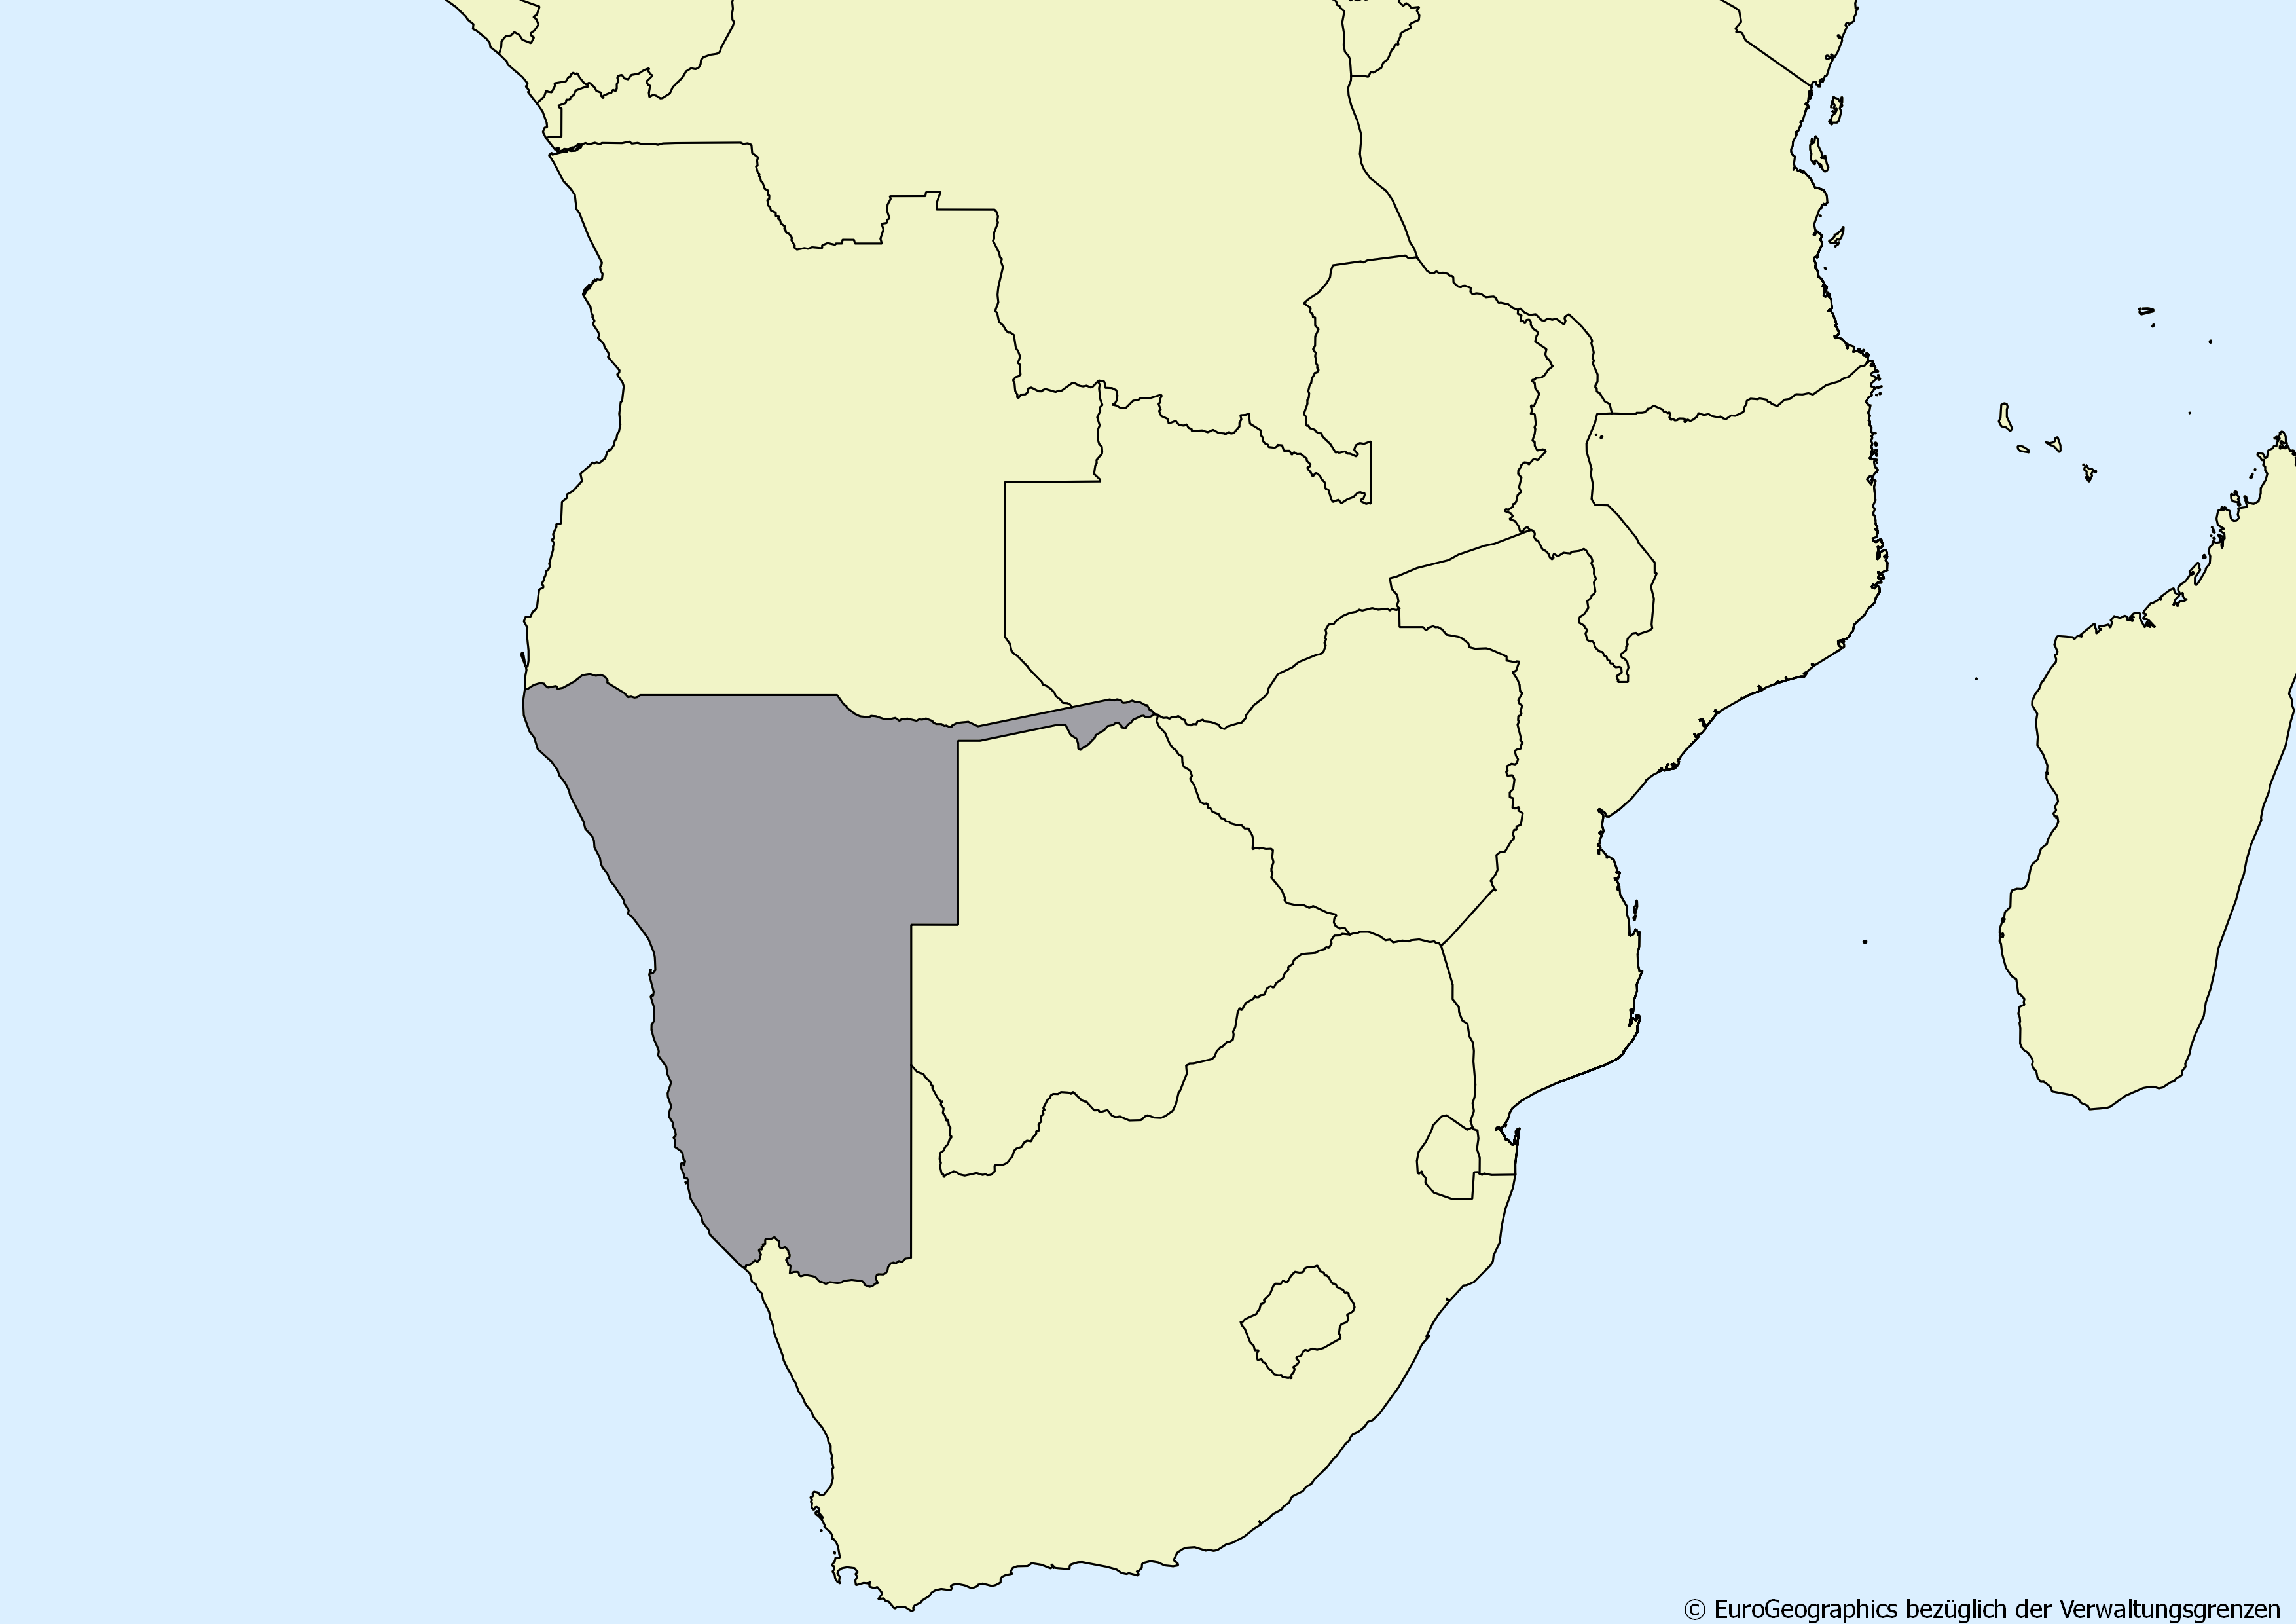 Ausschnitt einer Karte des afrikanischen Kontinents mit Ländergrenzen. Im Zentrum steht Namibia grau hervorgehoben